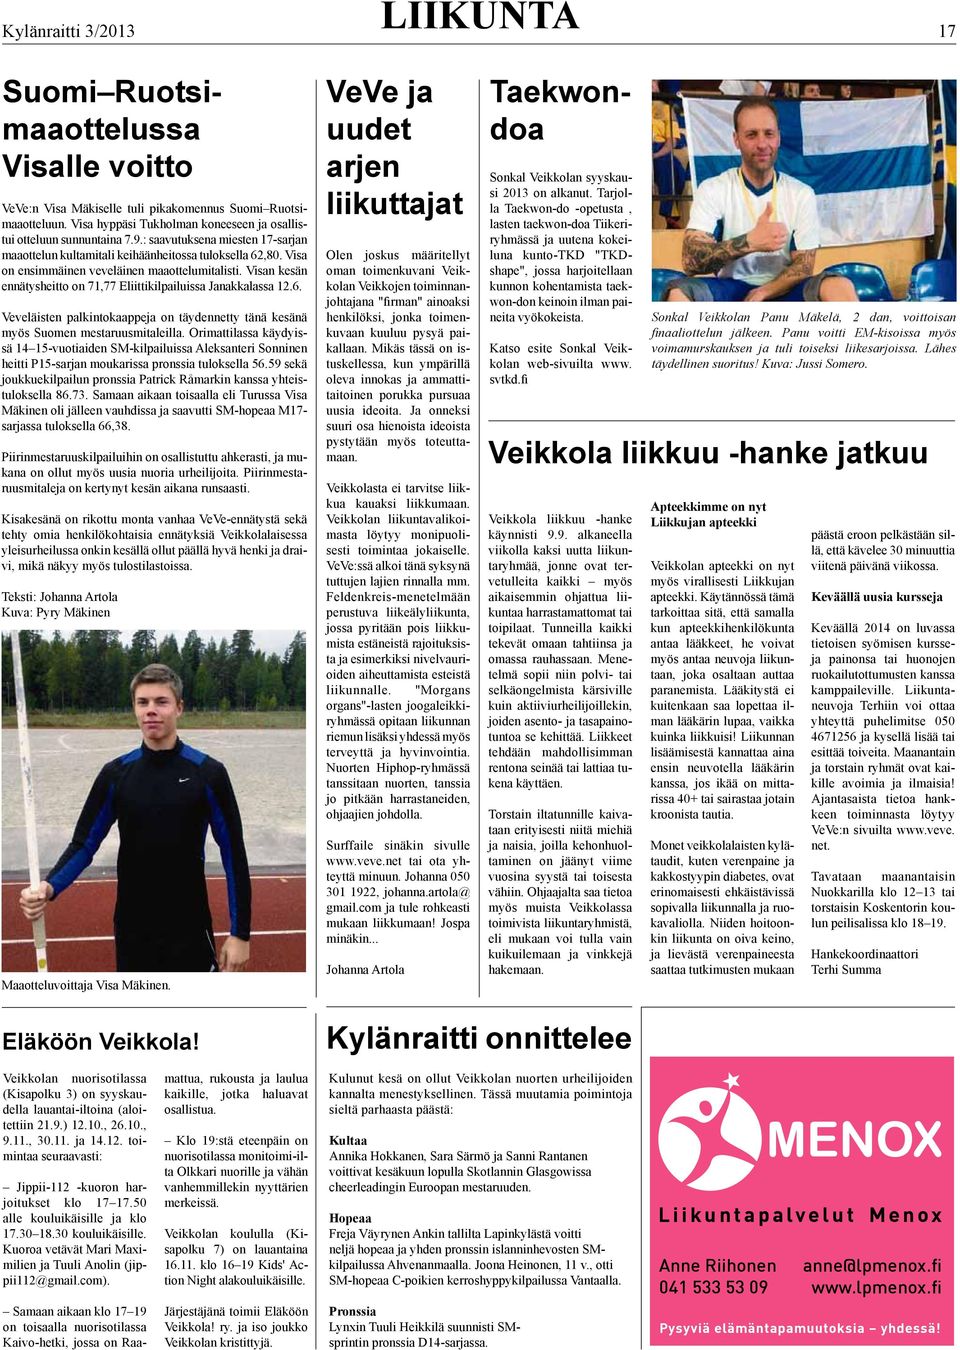 Visan kesän ennätysheitto on 71,77 Eliittikilpailuissa Janakkalassa 12.6. Veveläisten palkintokaappeja on täydennetty tänä kesänä myös Suomen mestaruusmitaleilla.